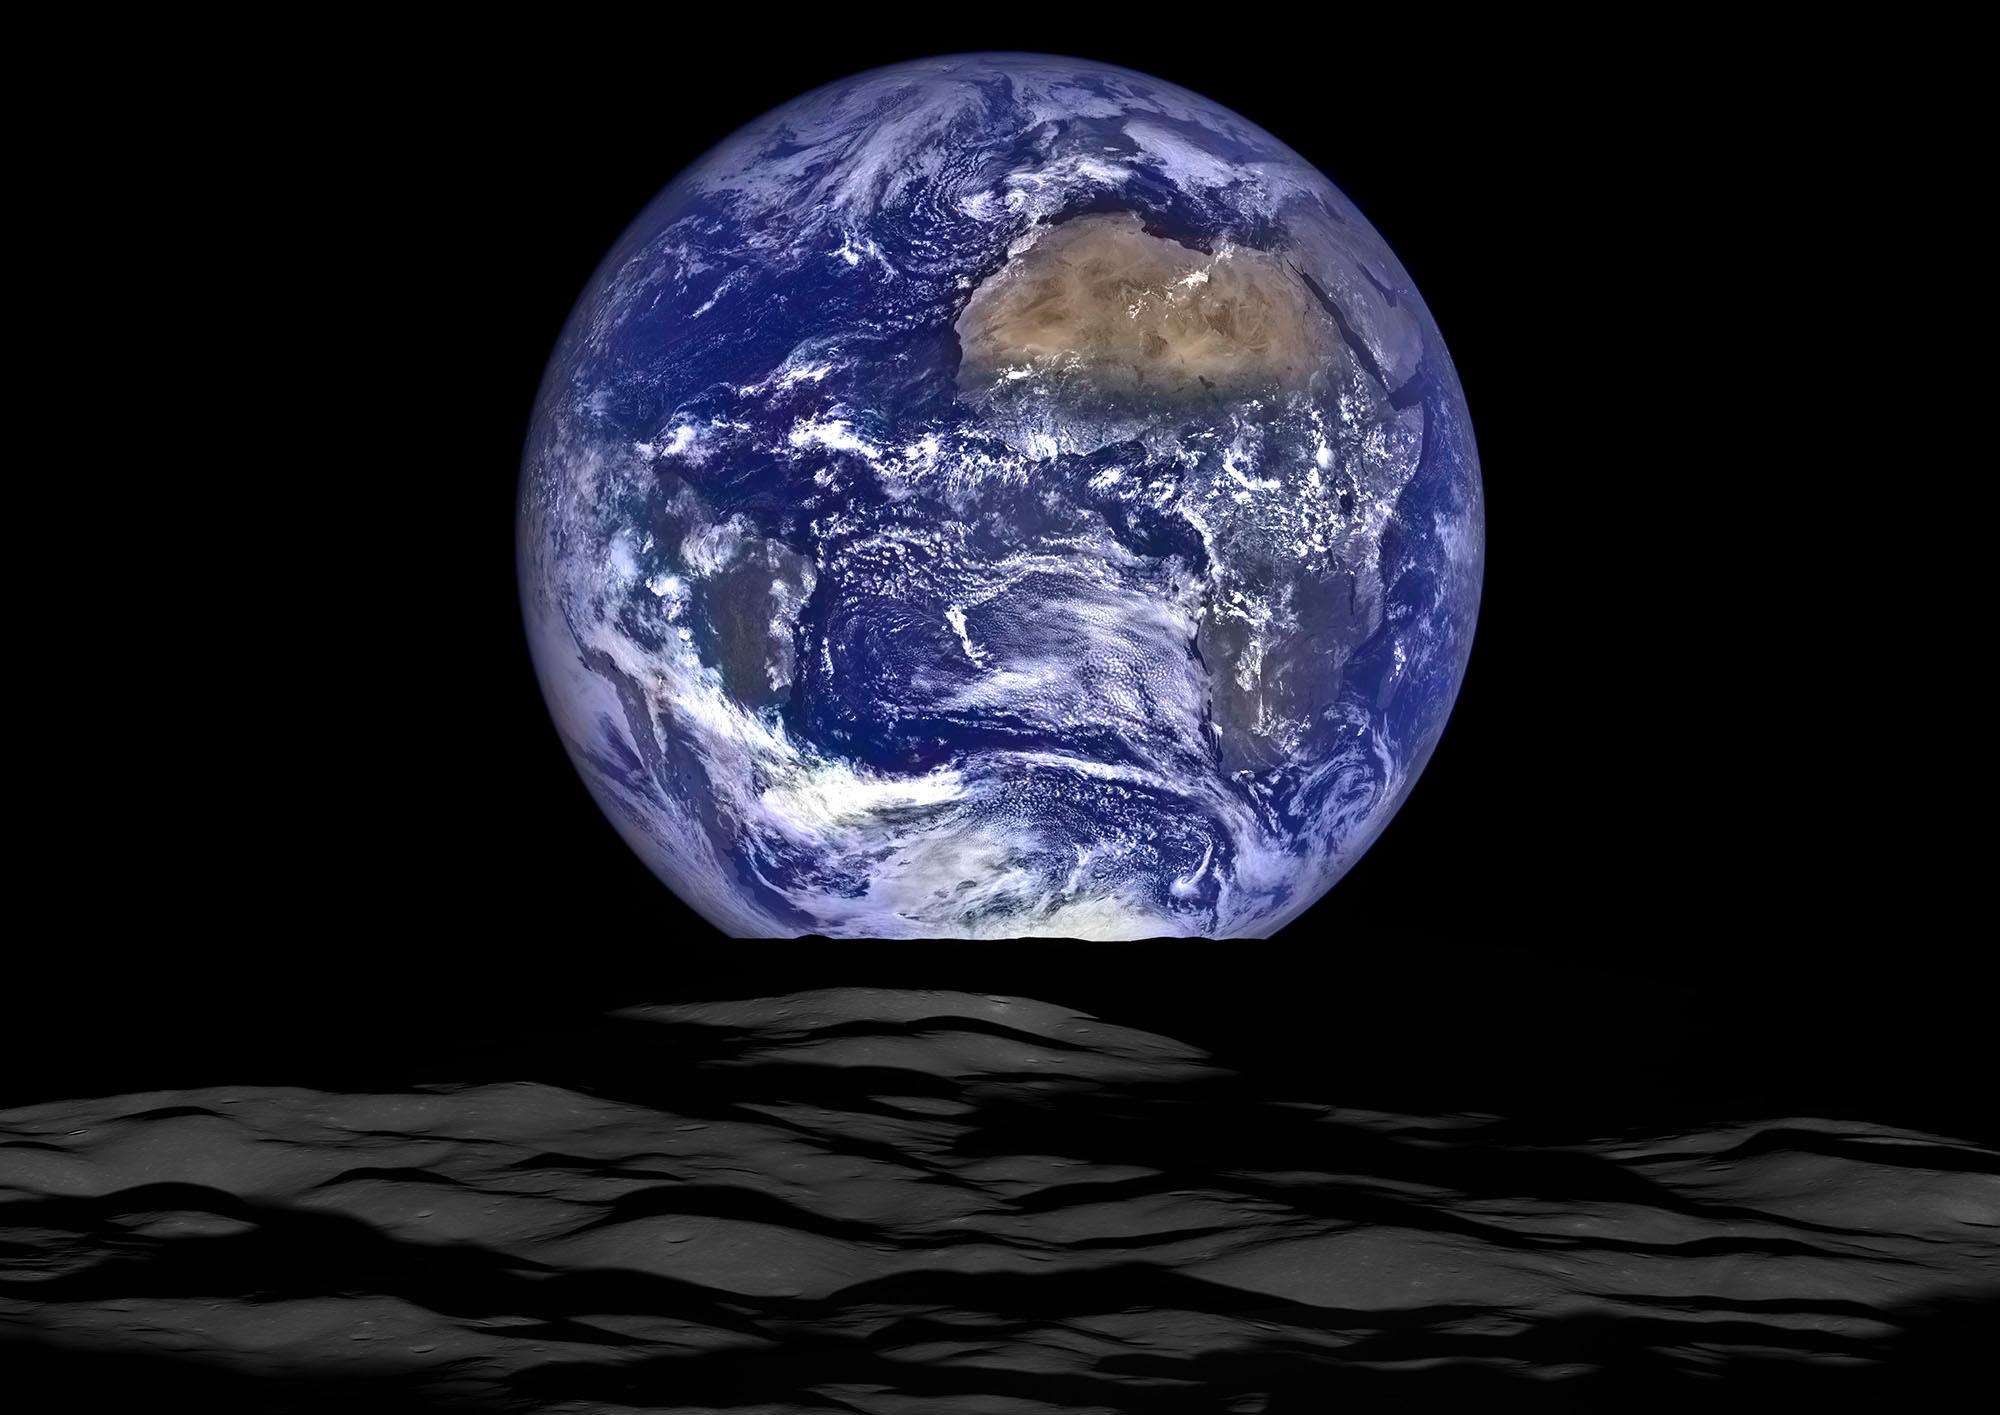 वायेजर 1  ने पृथ्वी-चंद्रमा प्रणाली की पहली तस्वीर ली